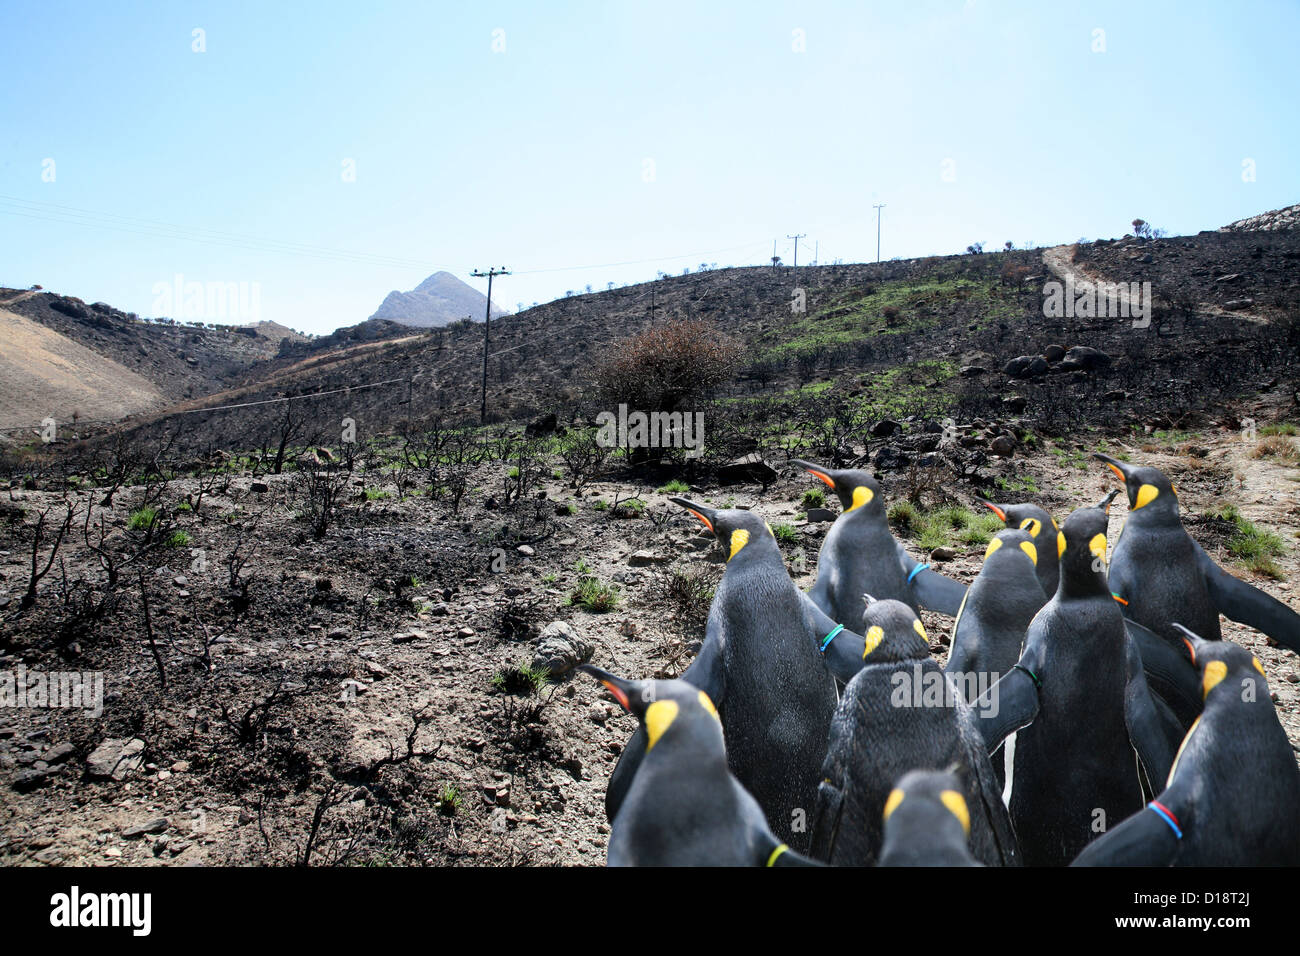 Penguins on tour Stock Photo